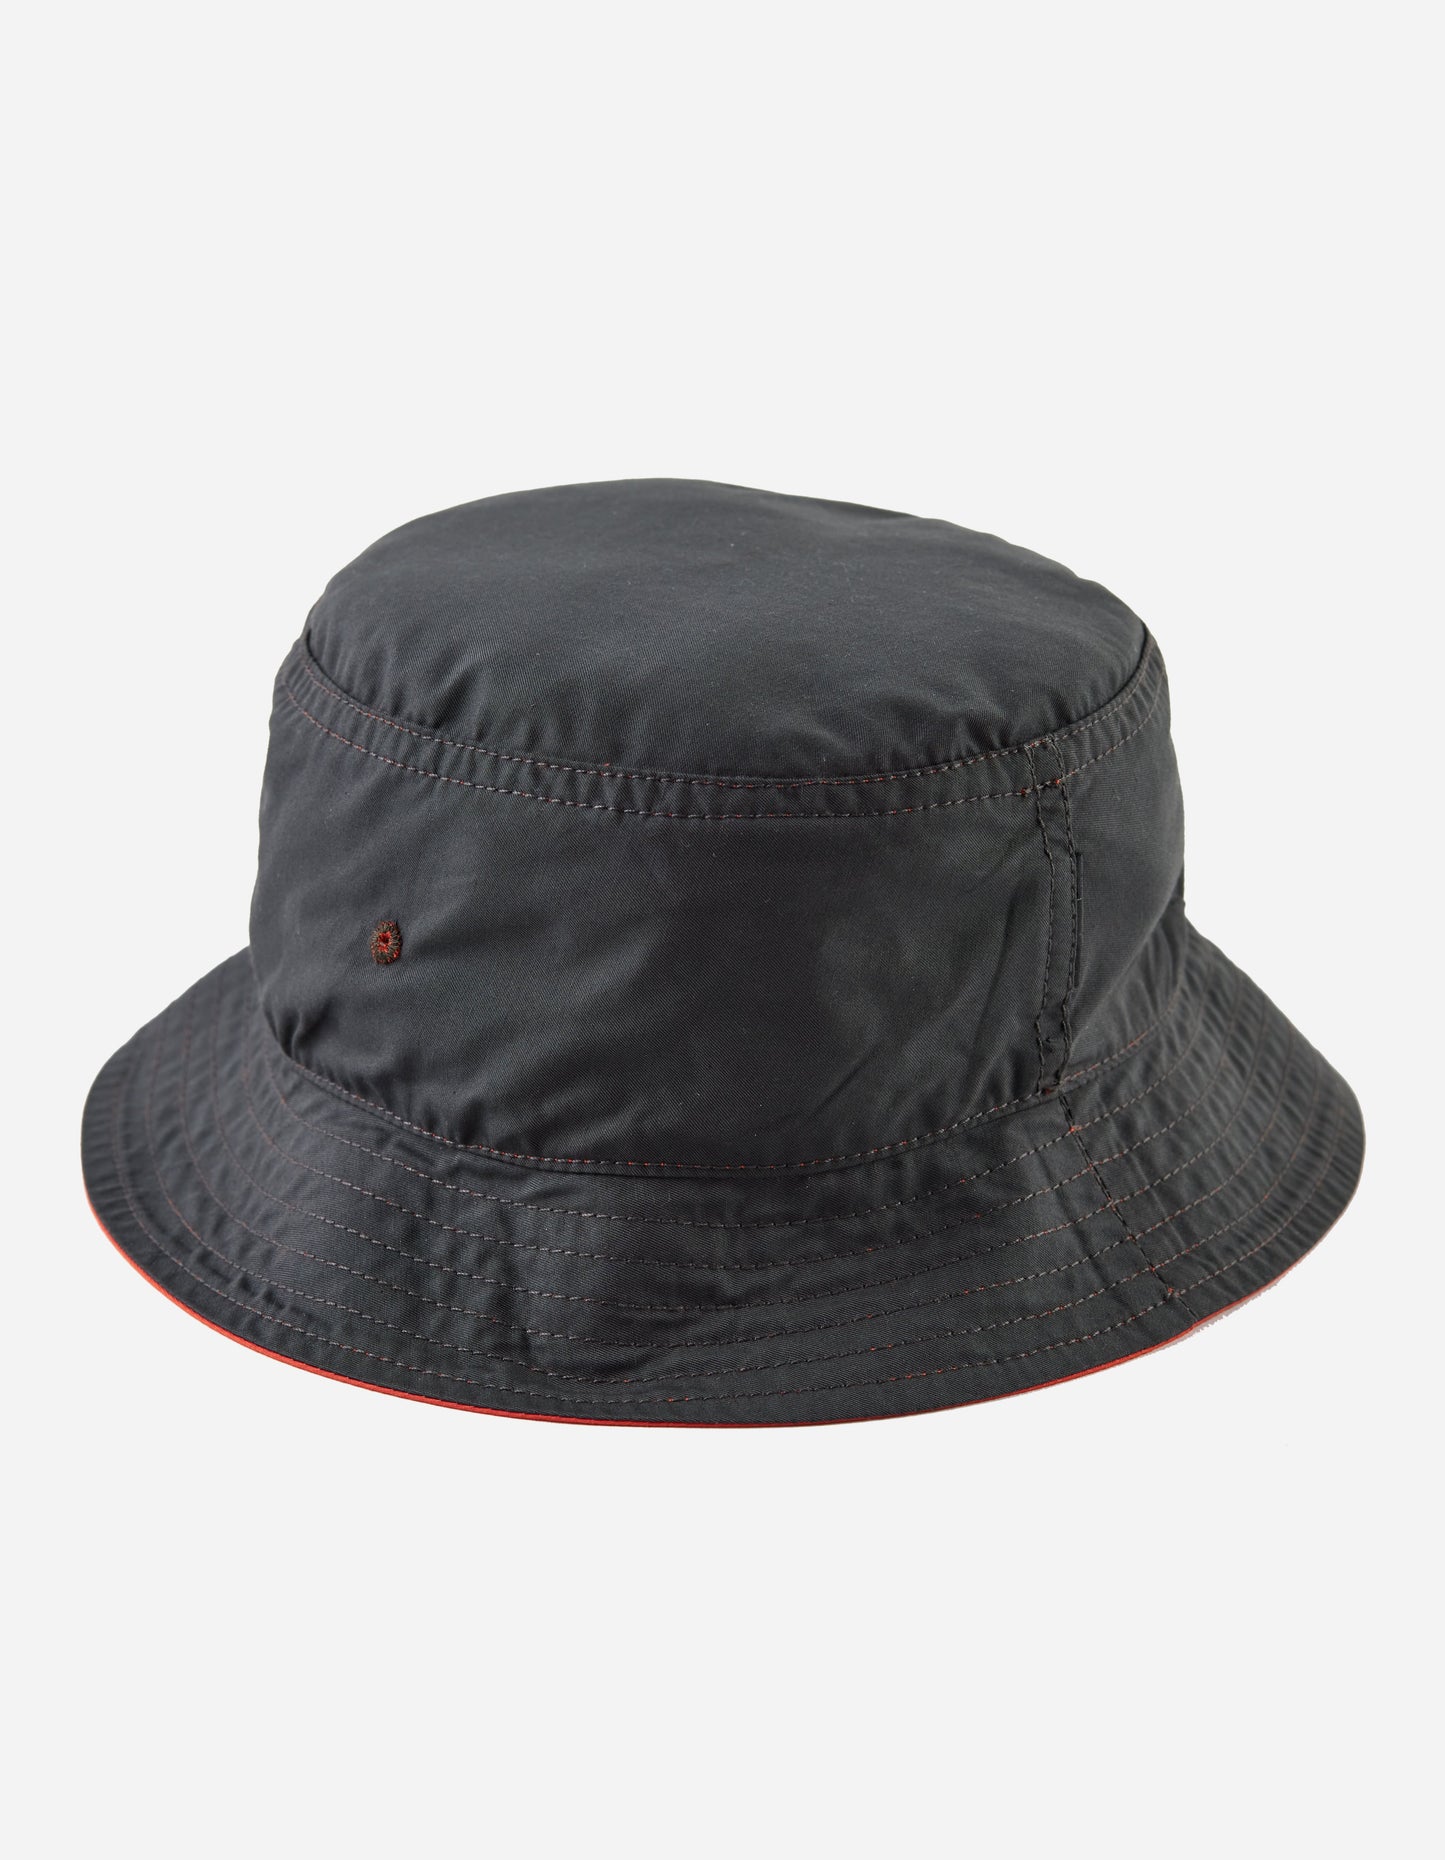 4532 Reversible Bucket Hat Blaze Orange/Charcoal